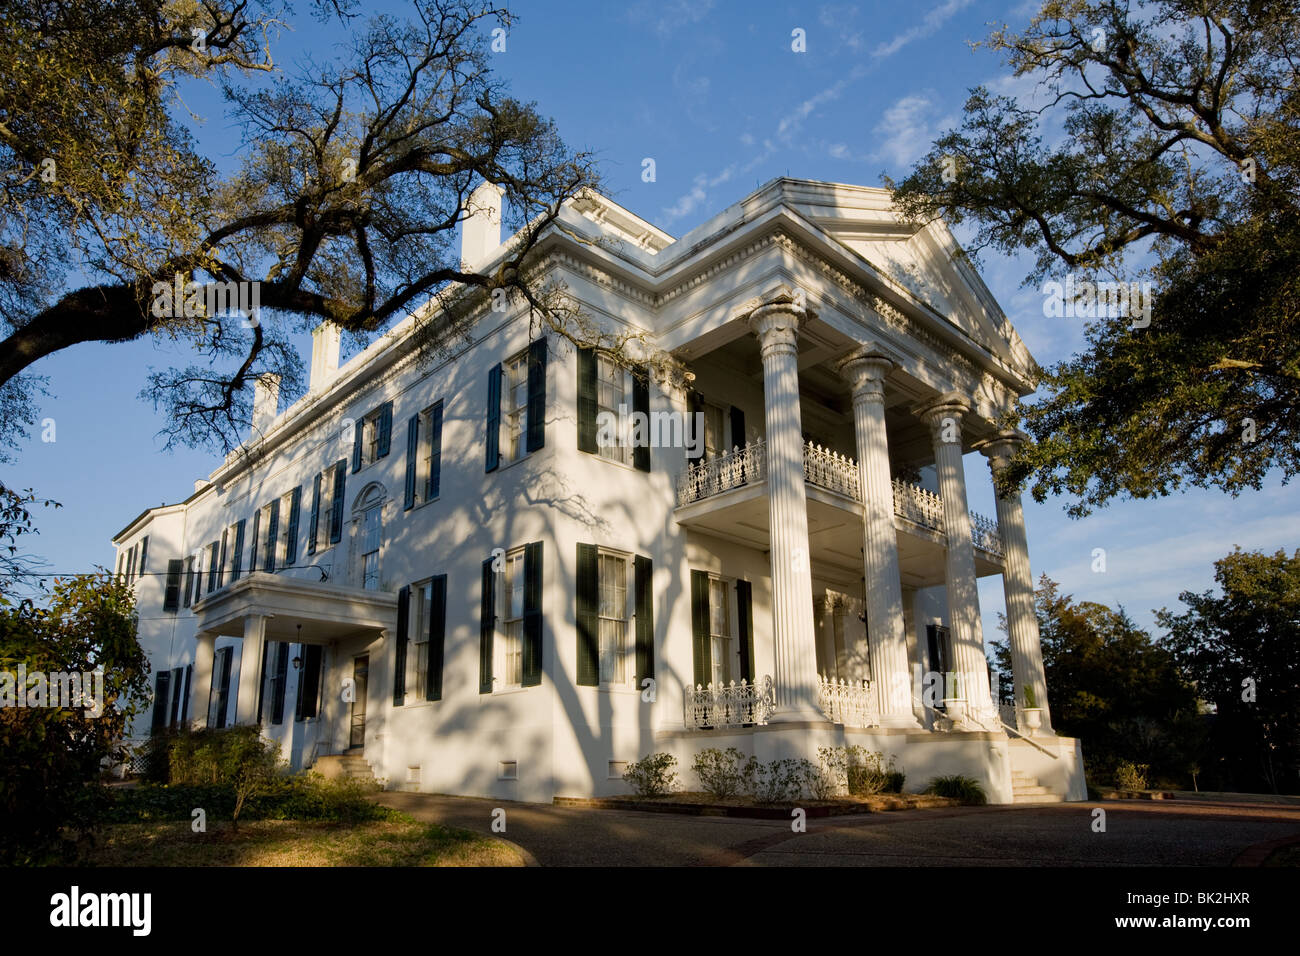 Stanton Hall, antebellum mansion in Natchez, Mississippi Foto Stock